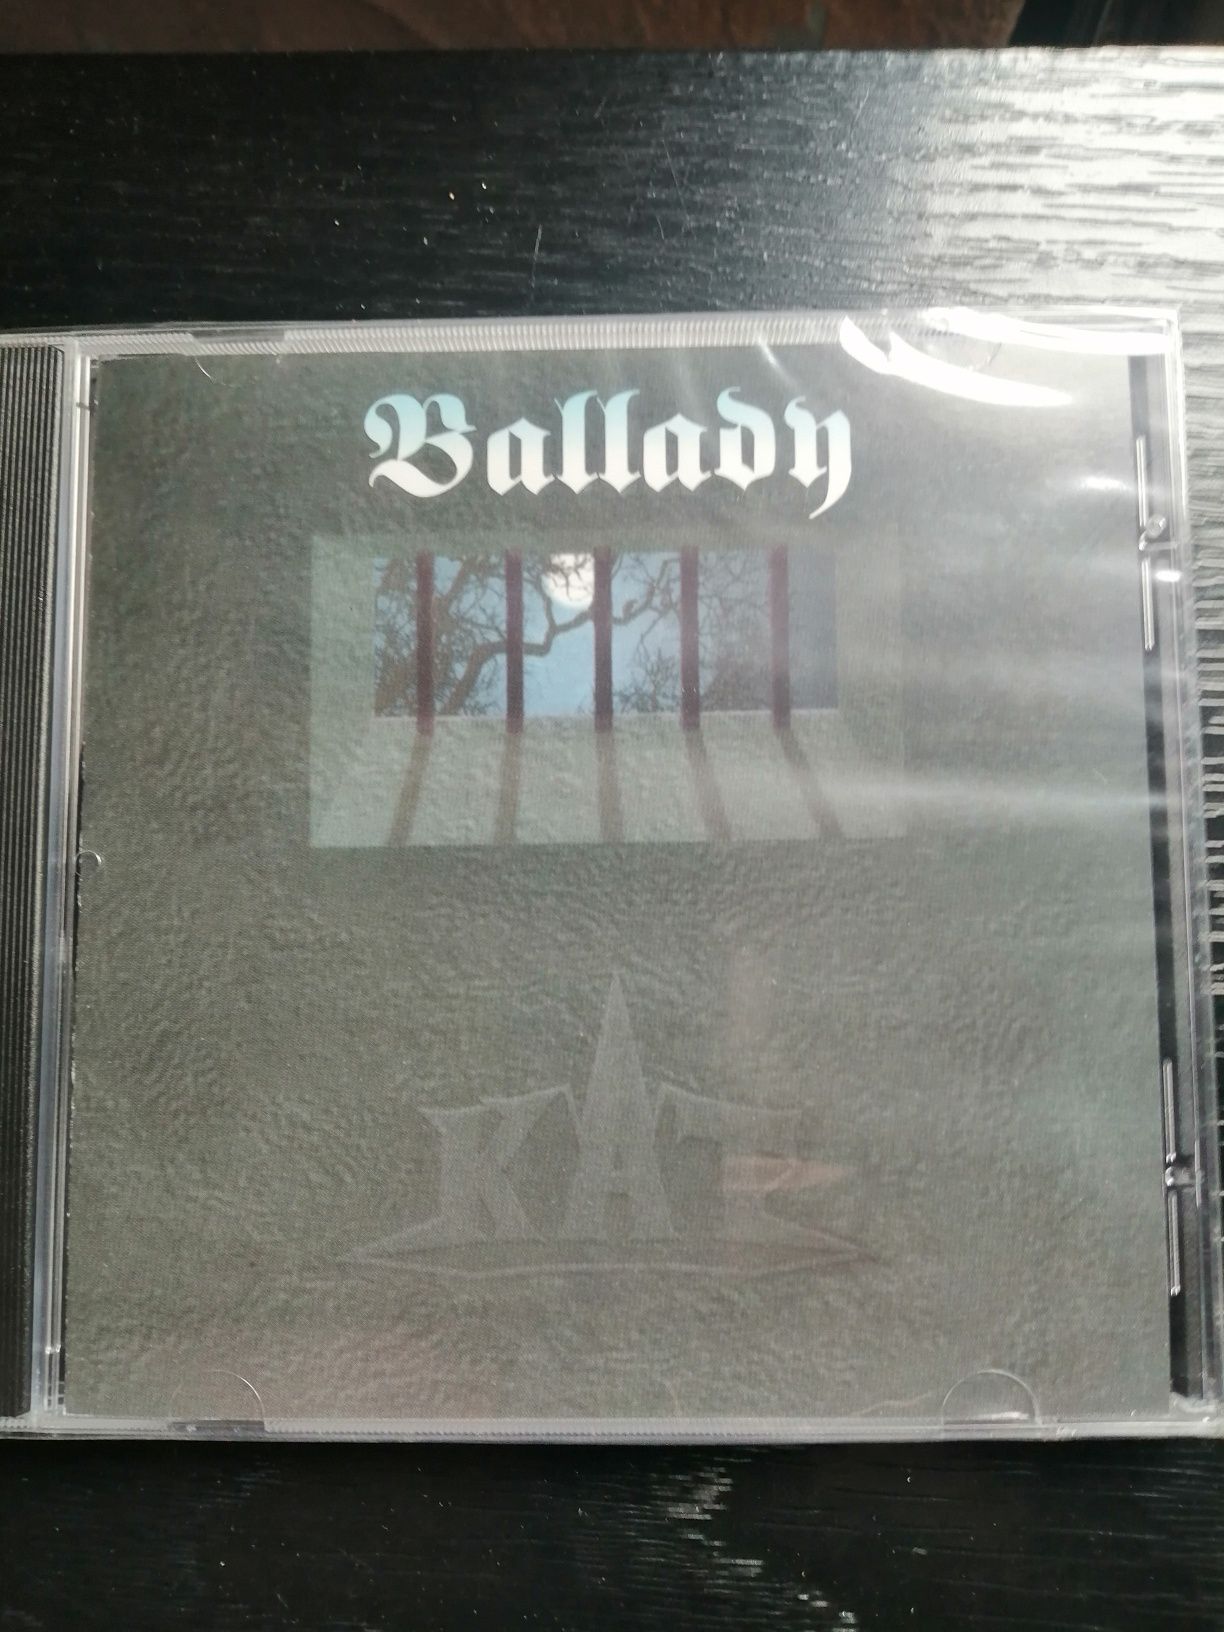 Płyta CD KAT Ballady nowa folia